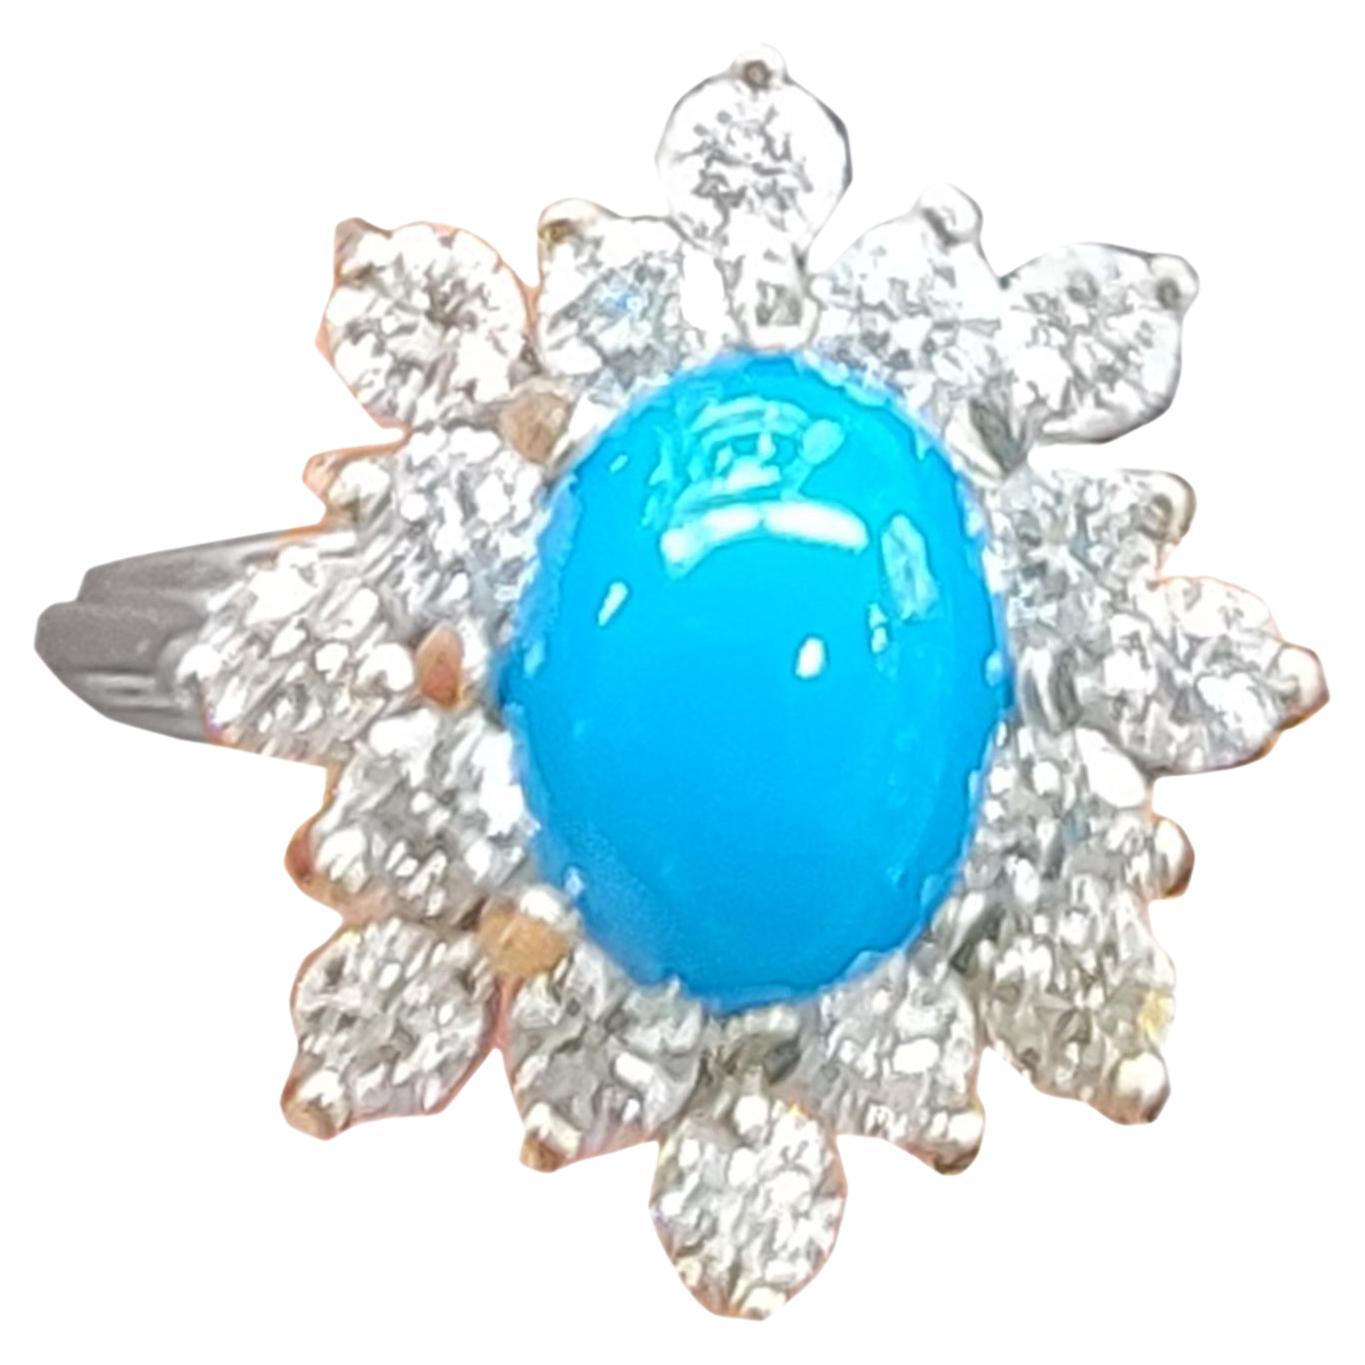 Turquoise Diamond Ring 14 Karat White Gold